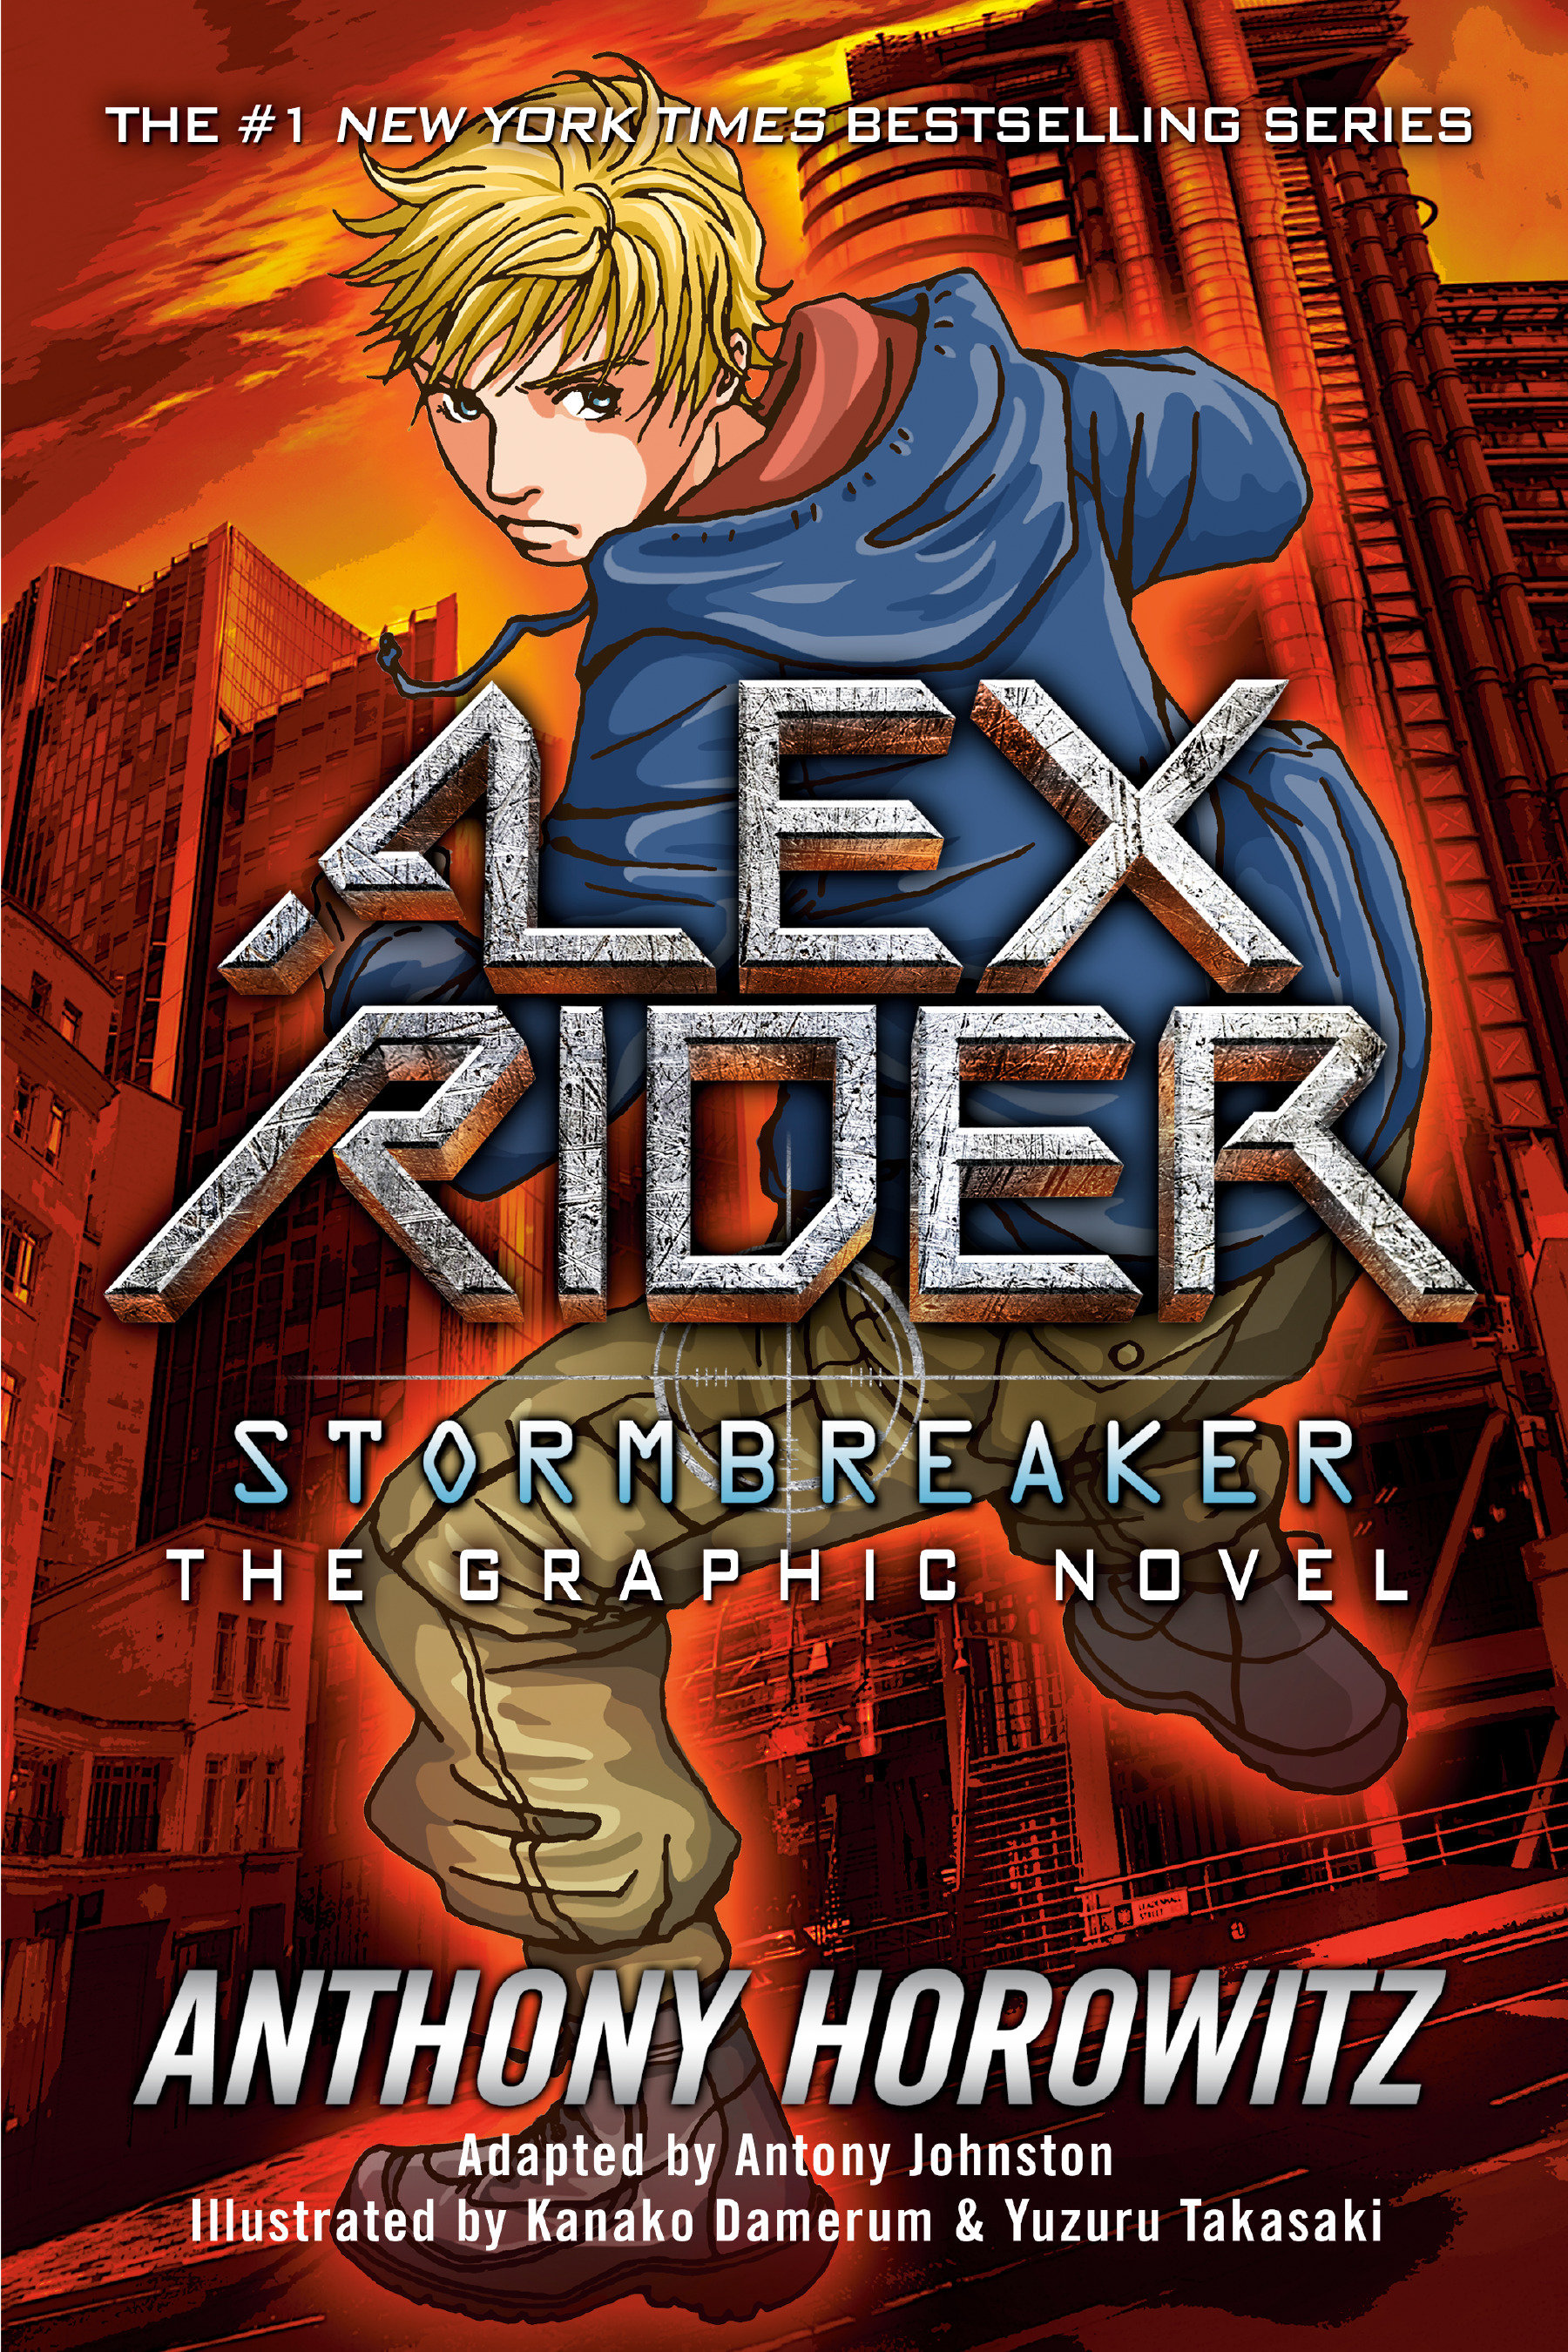 Alex Rider Stormbreaker Graphic Novel